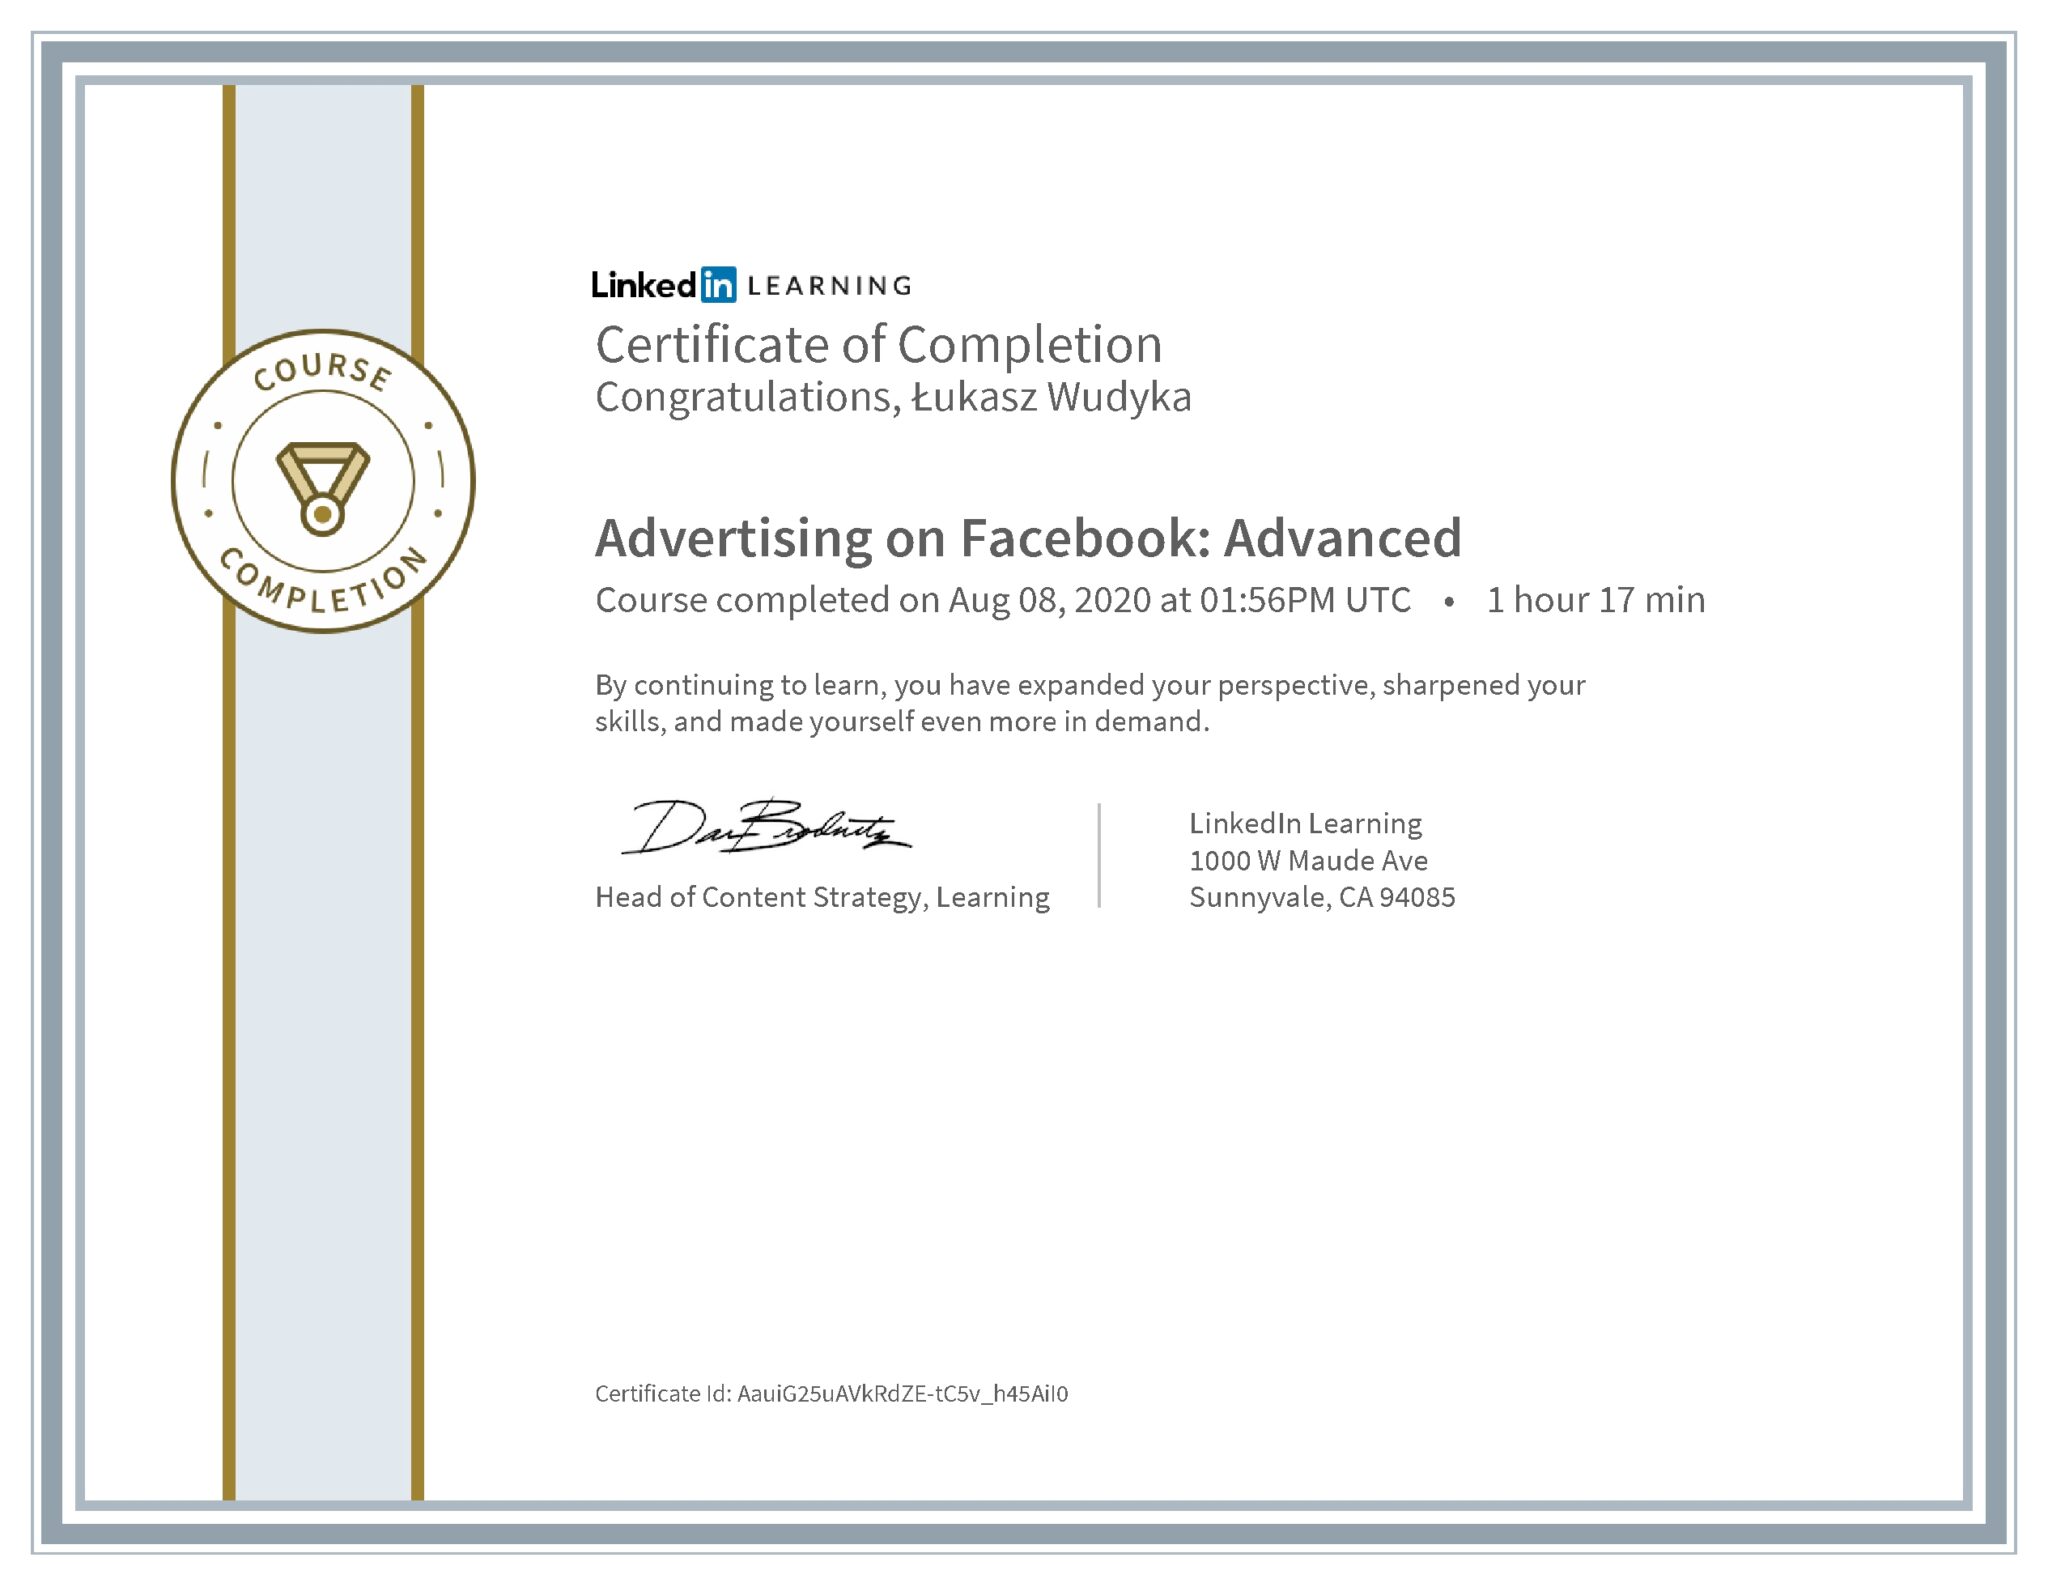 Łukasz Wudyka certyfikat LinkedIn Advertising on Facebook: Advanced